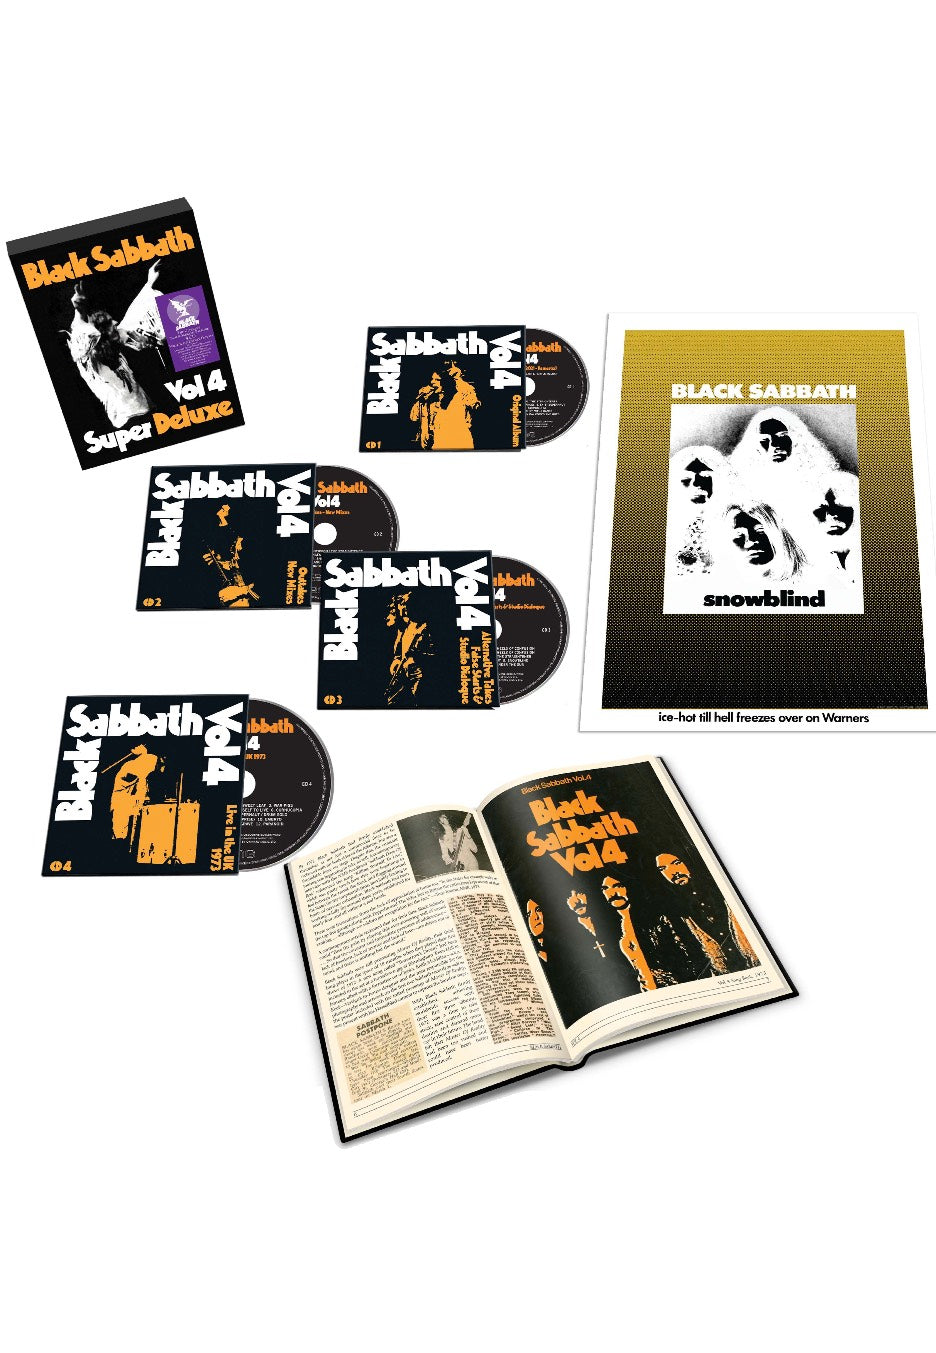 Black Sabbath - Vol.4 (Super Deluxe) - CD Box